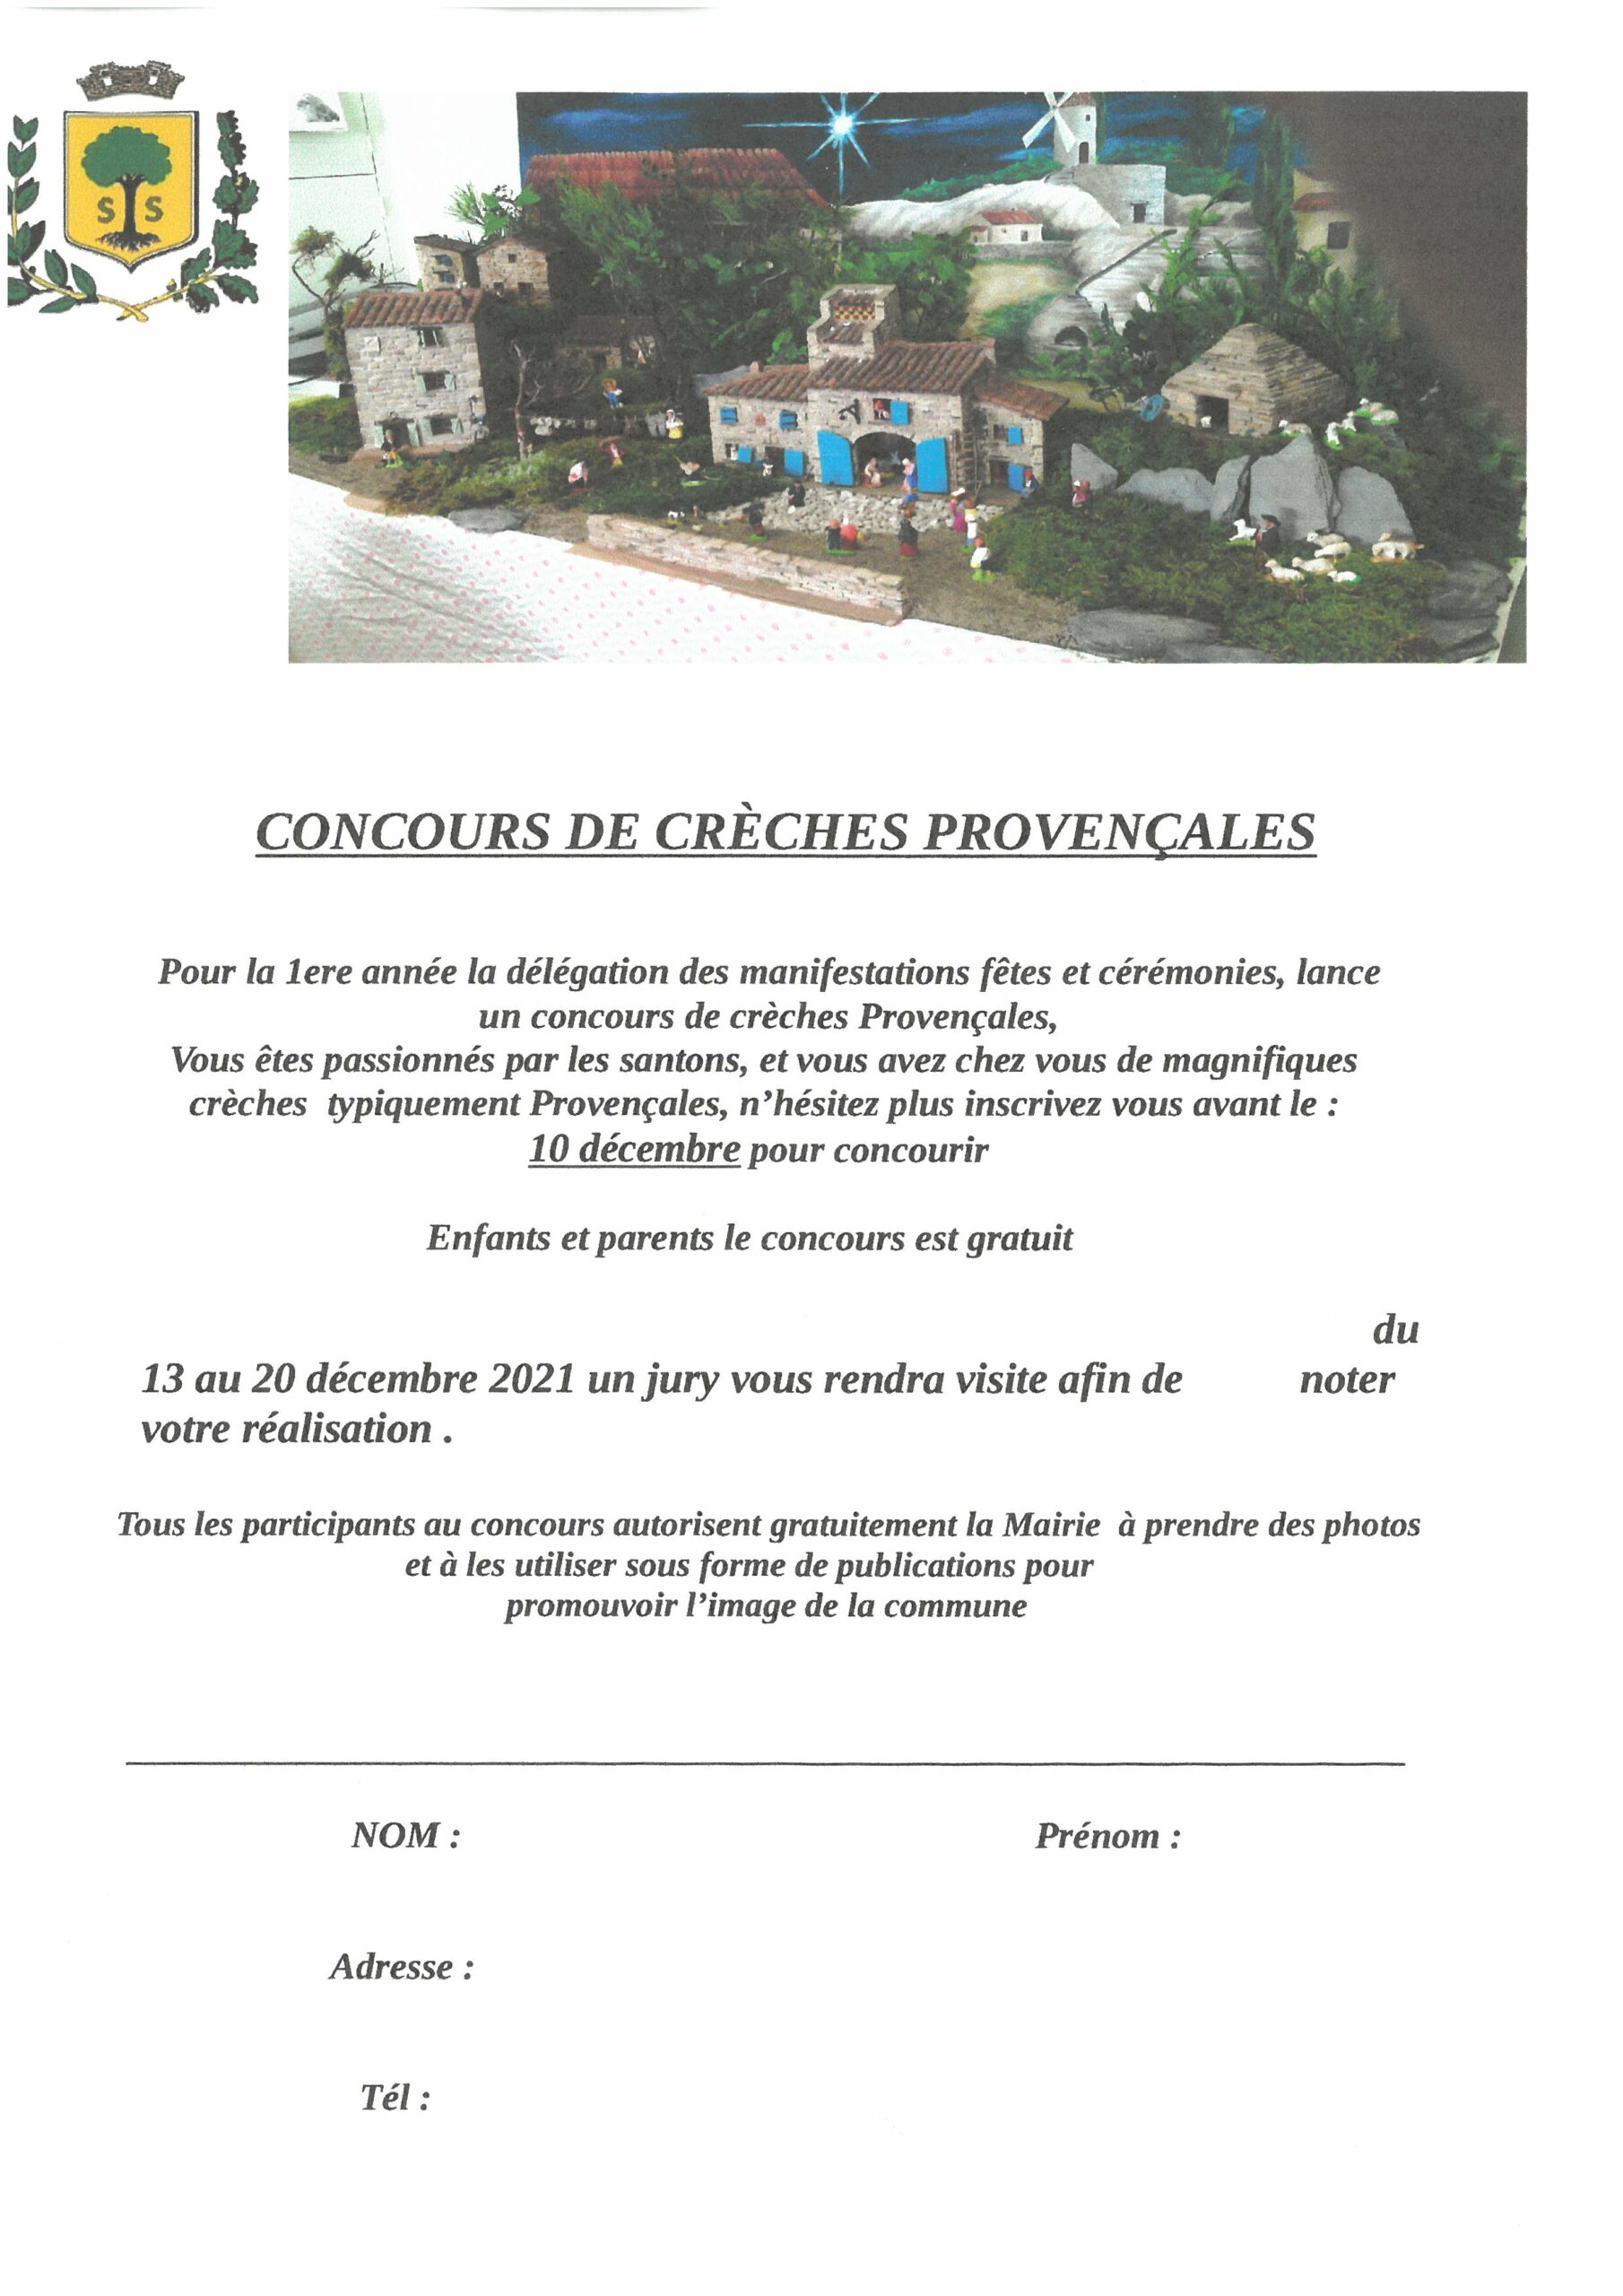 Mairie Saint-Savournin concours crèches provençales 2021 - bulletin inscription